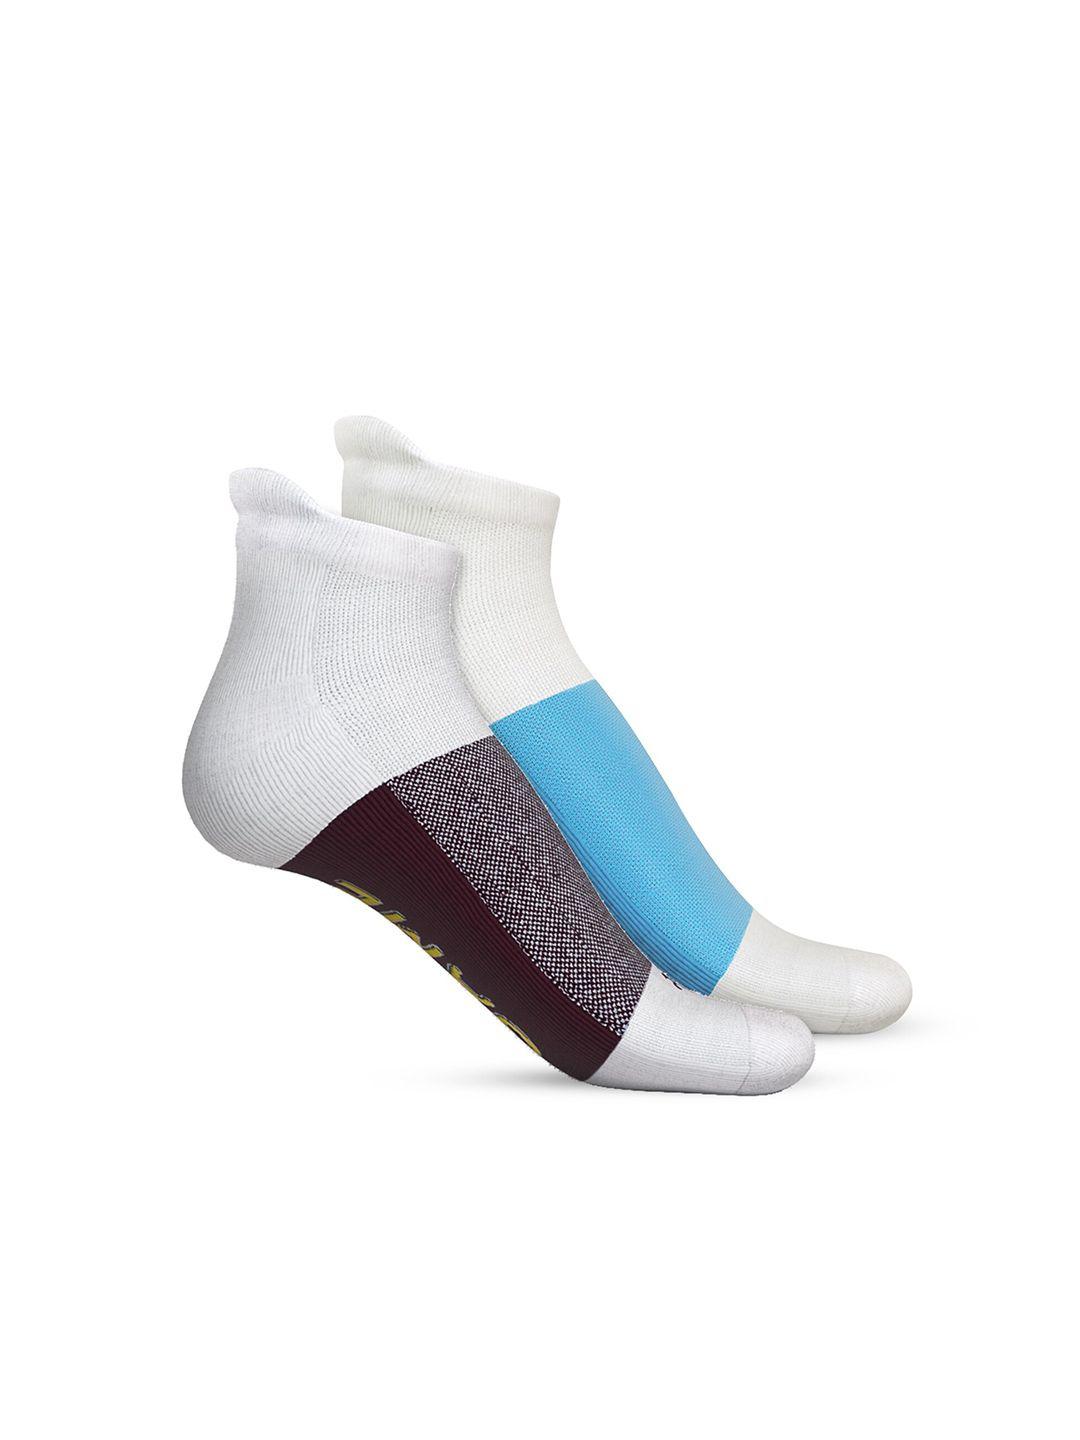 talkingsox unisex pack of 2 colourblocked ankle-length socks